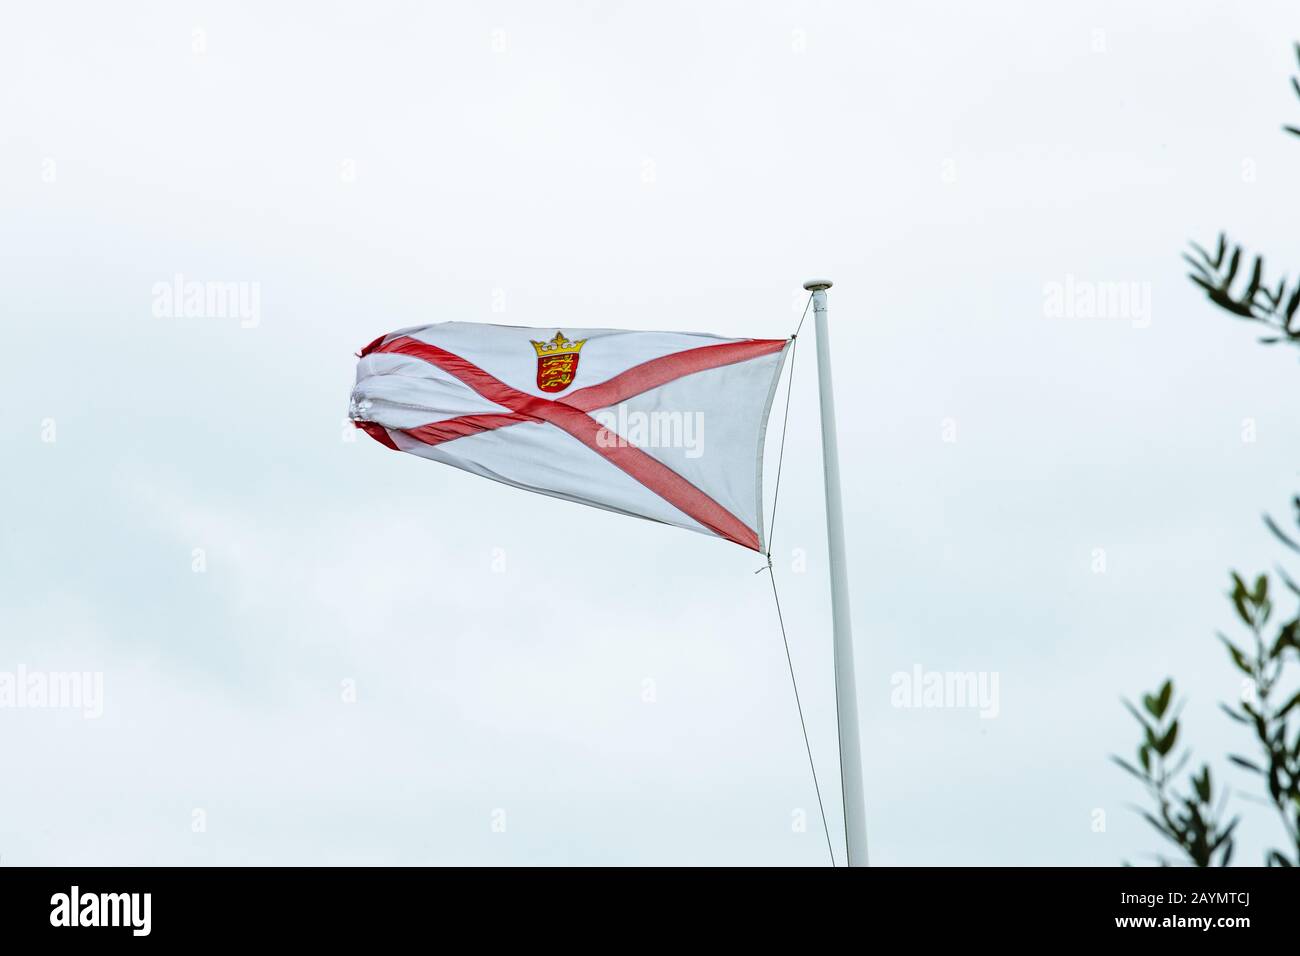 Jersey (îles Anglo-Normandes) drapeau qui s'étende au vent de Storm Dennis Banque D'Images